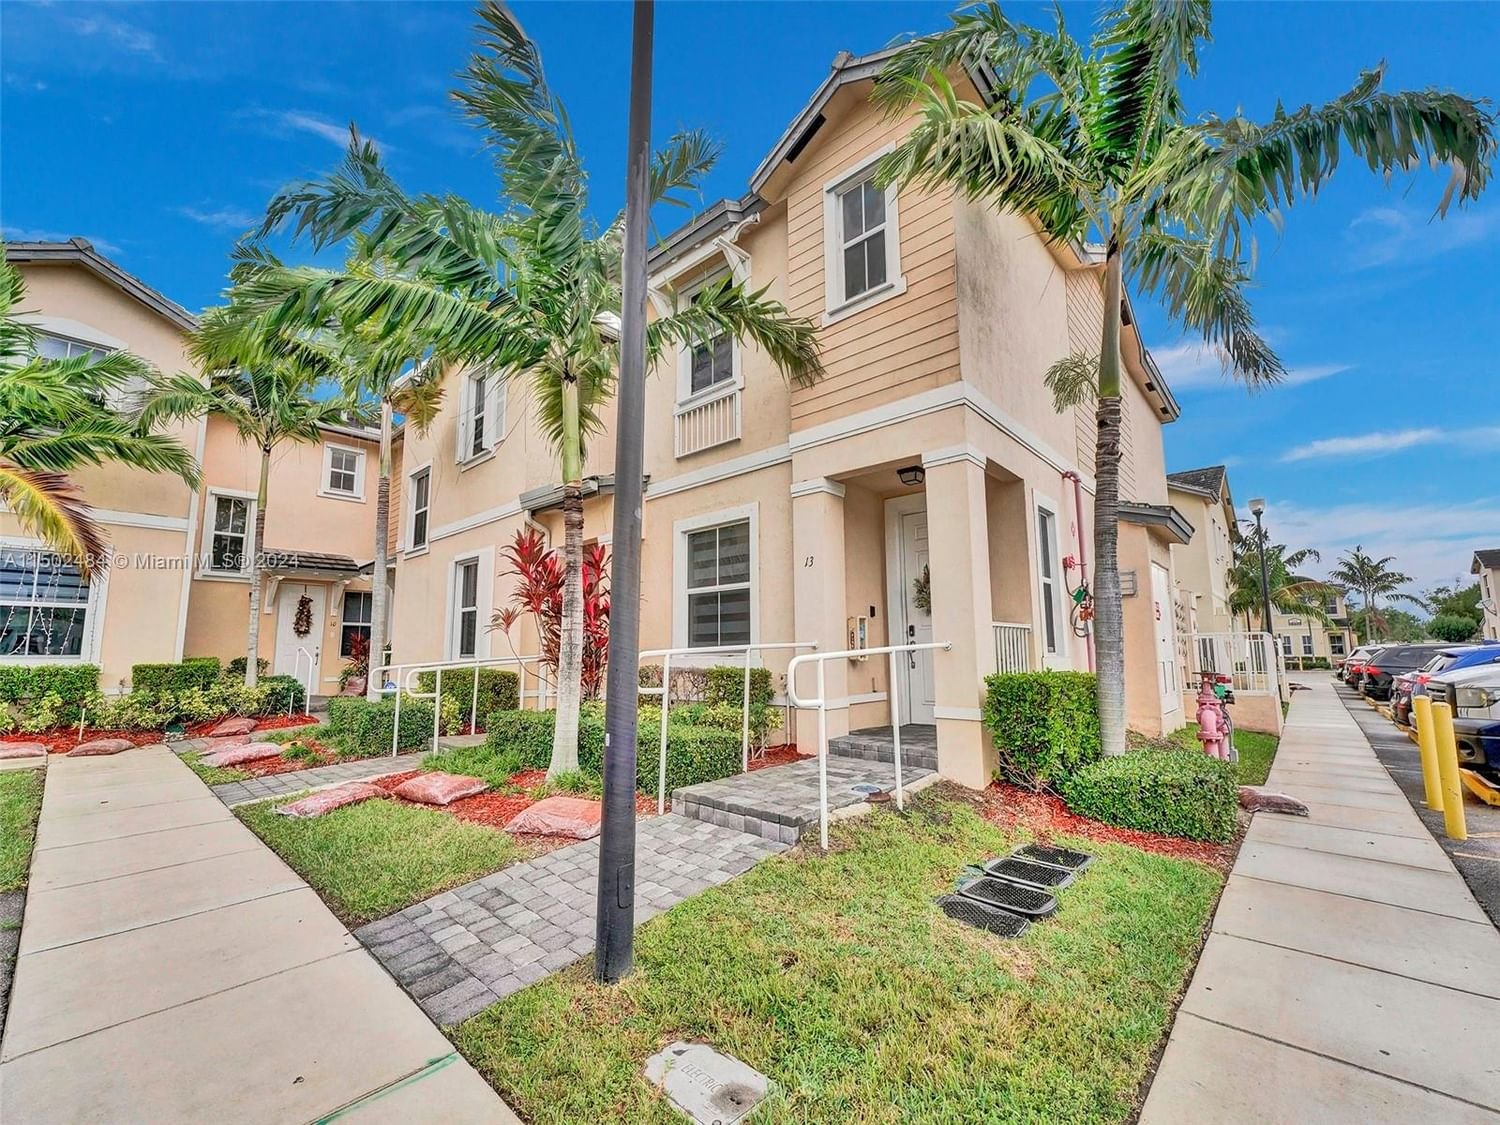 Real estate property located at 142 28th Ter #13, Miami-Dade County, FIJI CONDO NO 1, Homestead, FL